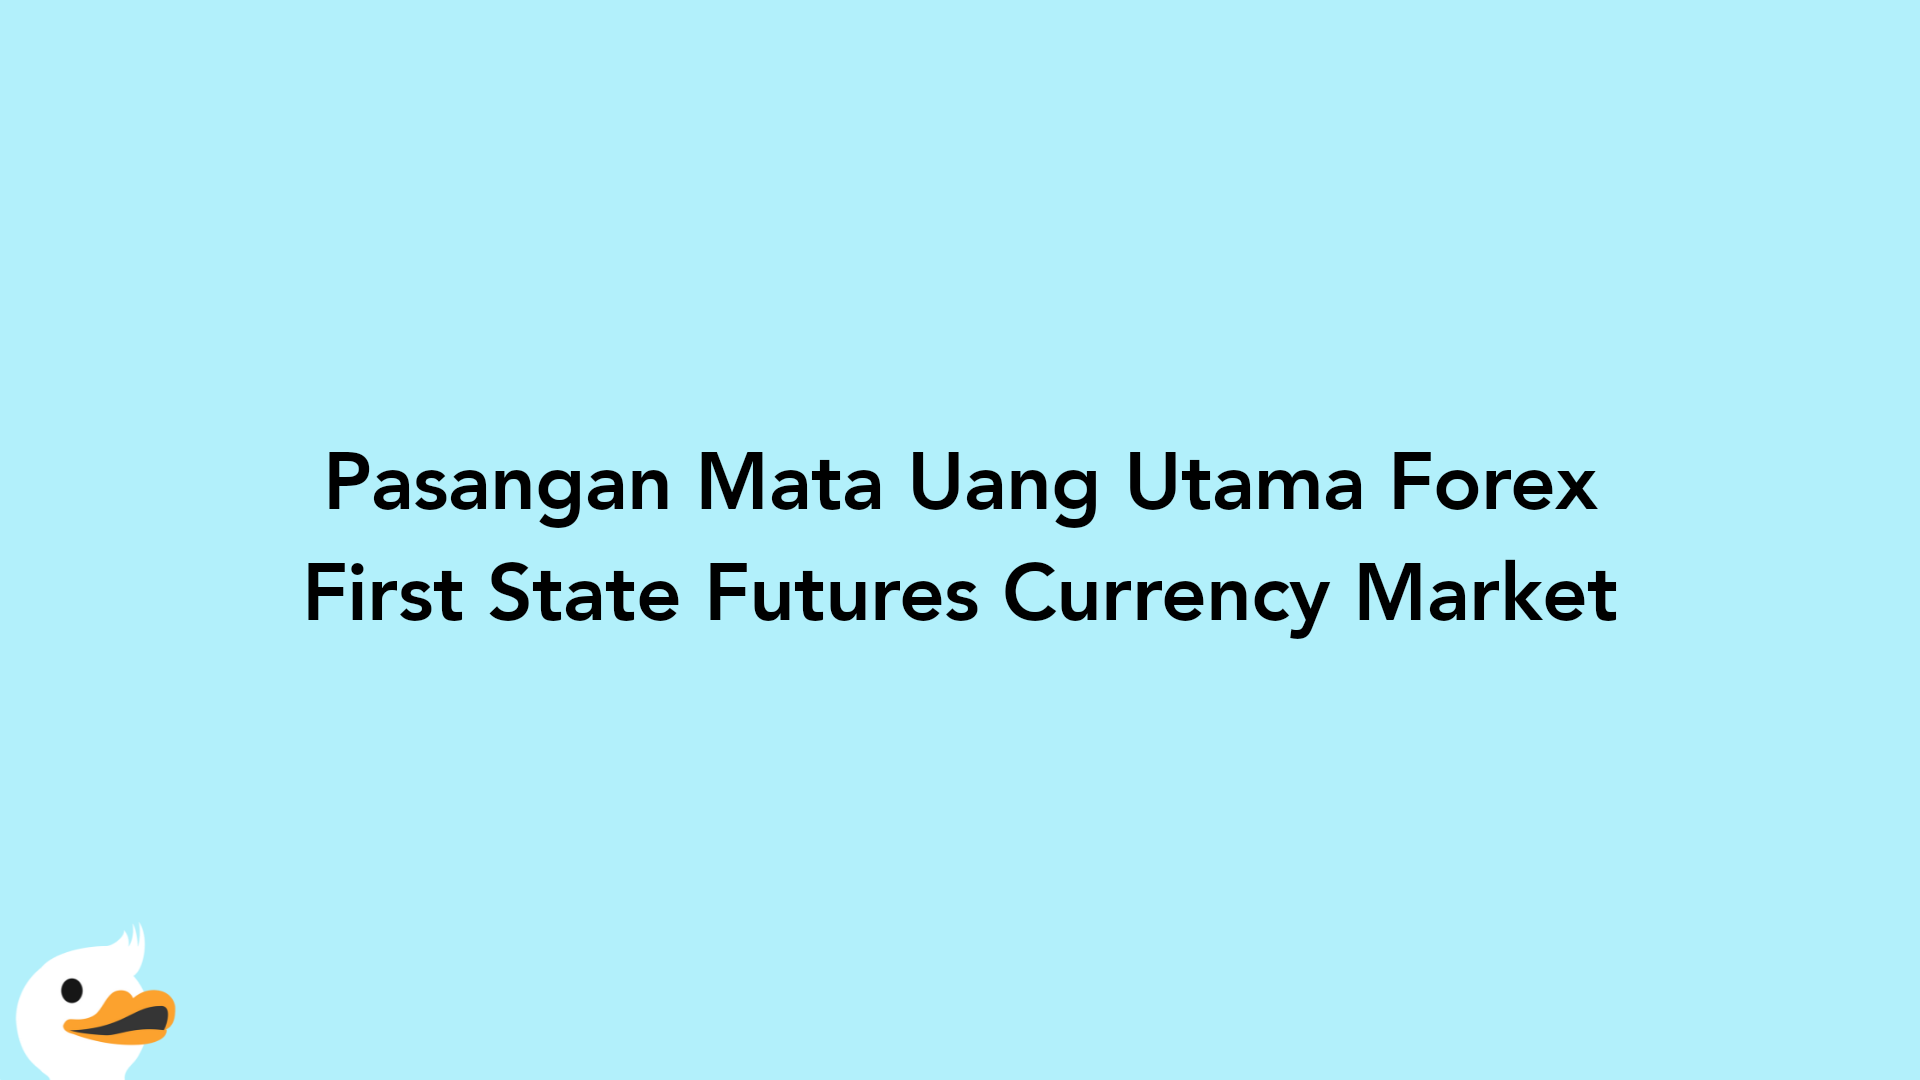 Pasangan Mata Uang Utama Forex First State Futures Currency Market